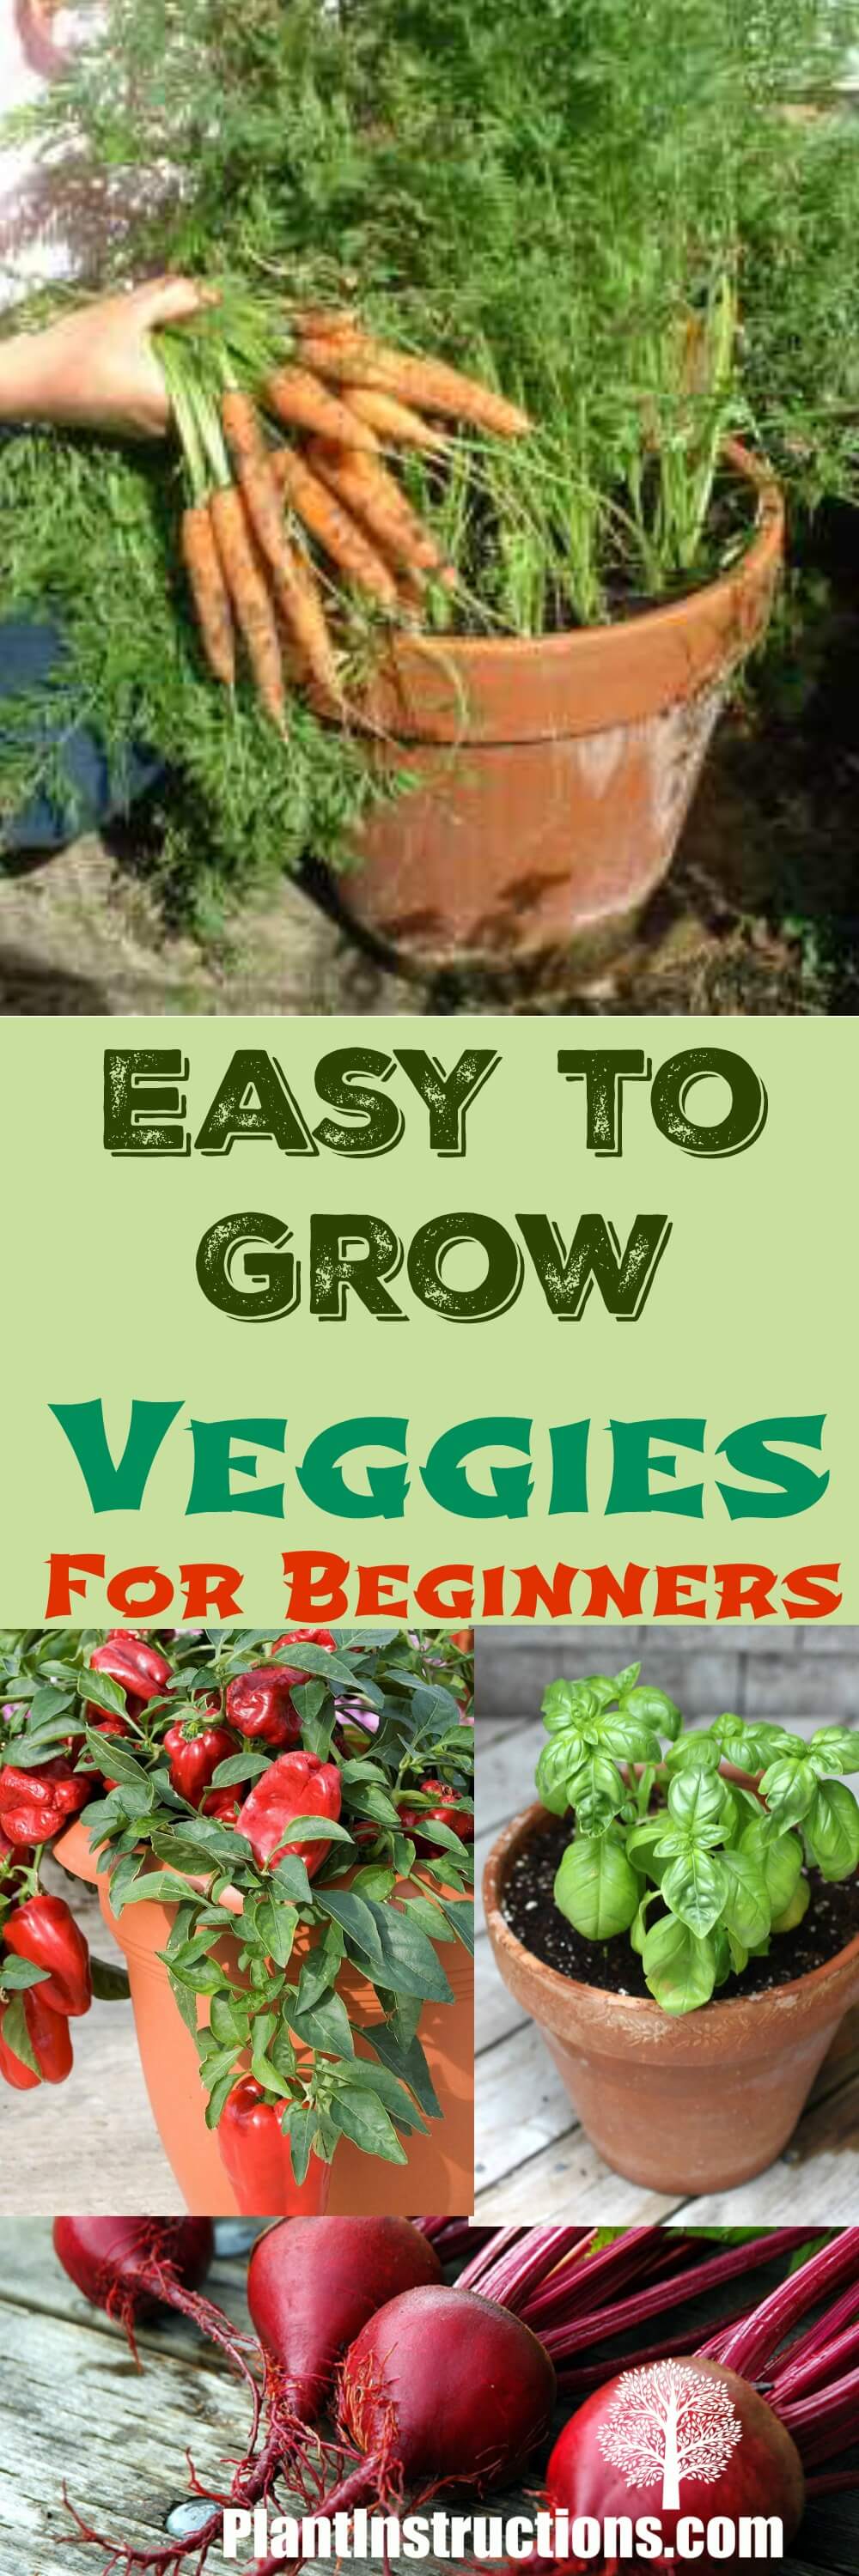 Easy to Grow Veggies